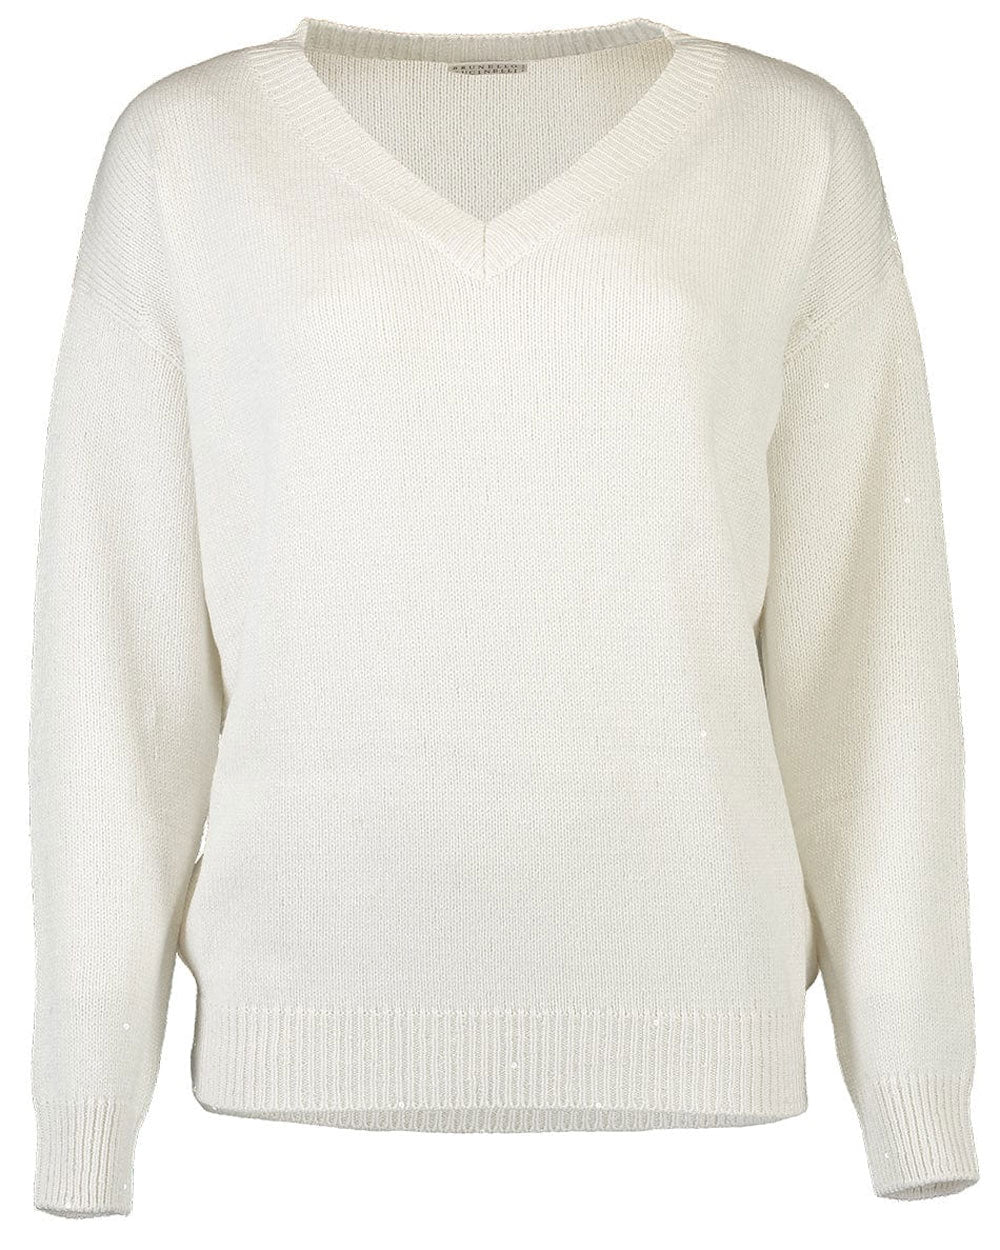 White Paillette Cashmere Sweater